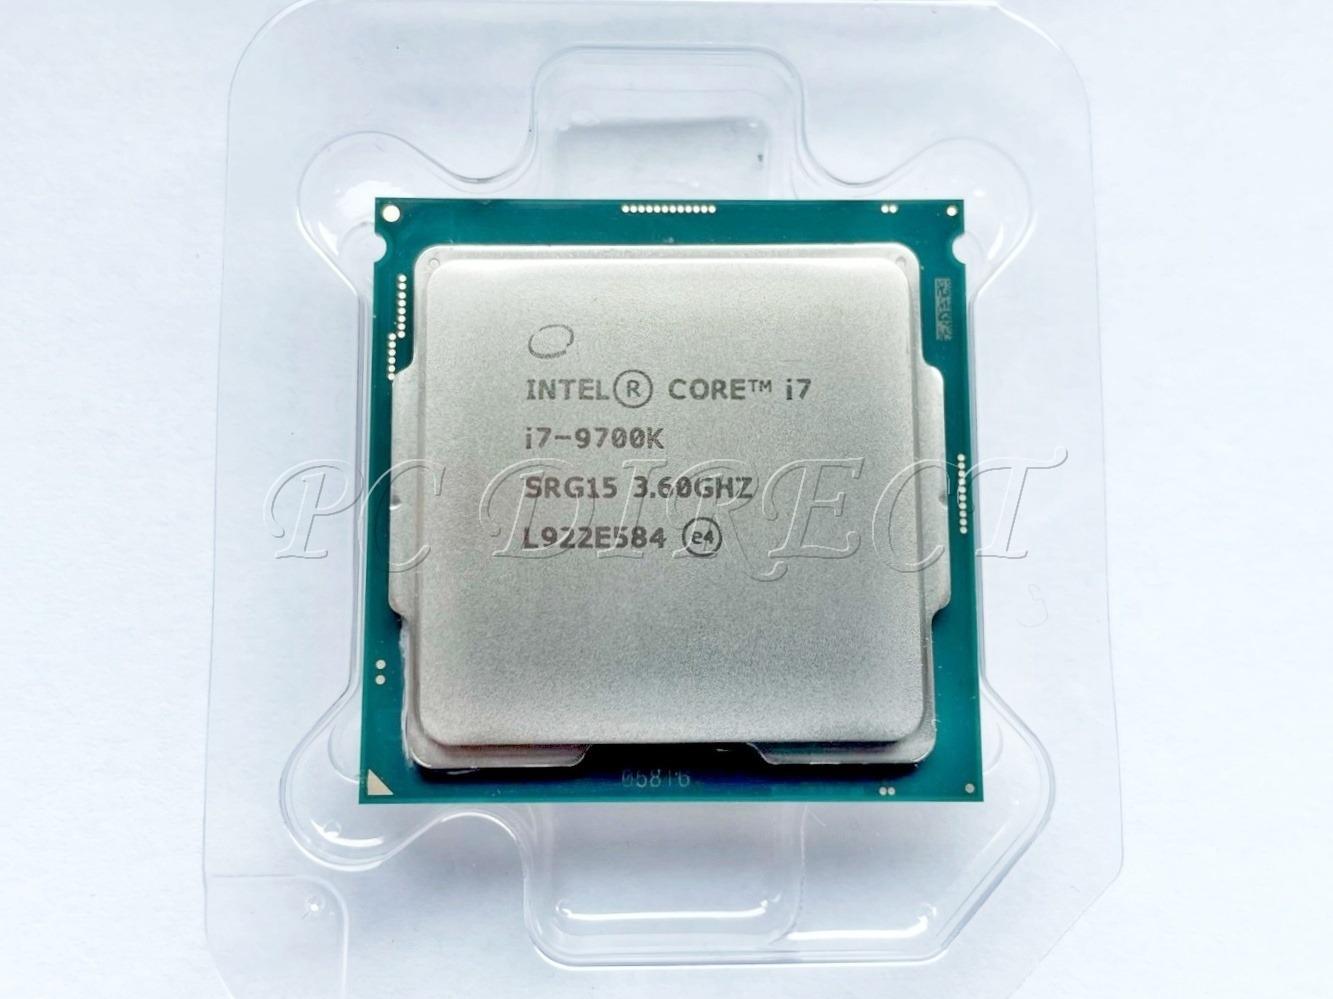 Procesor Intel Core i7-9700K - 8C/8T až 4,9 GHz - Socket 1151 - Počítače a hry